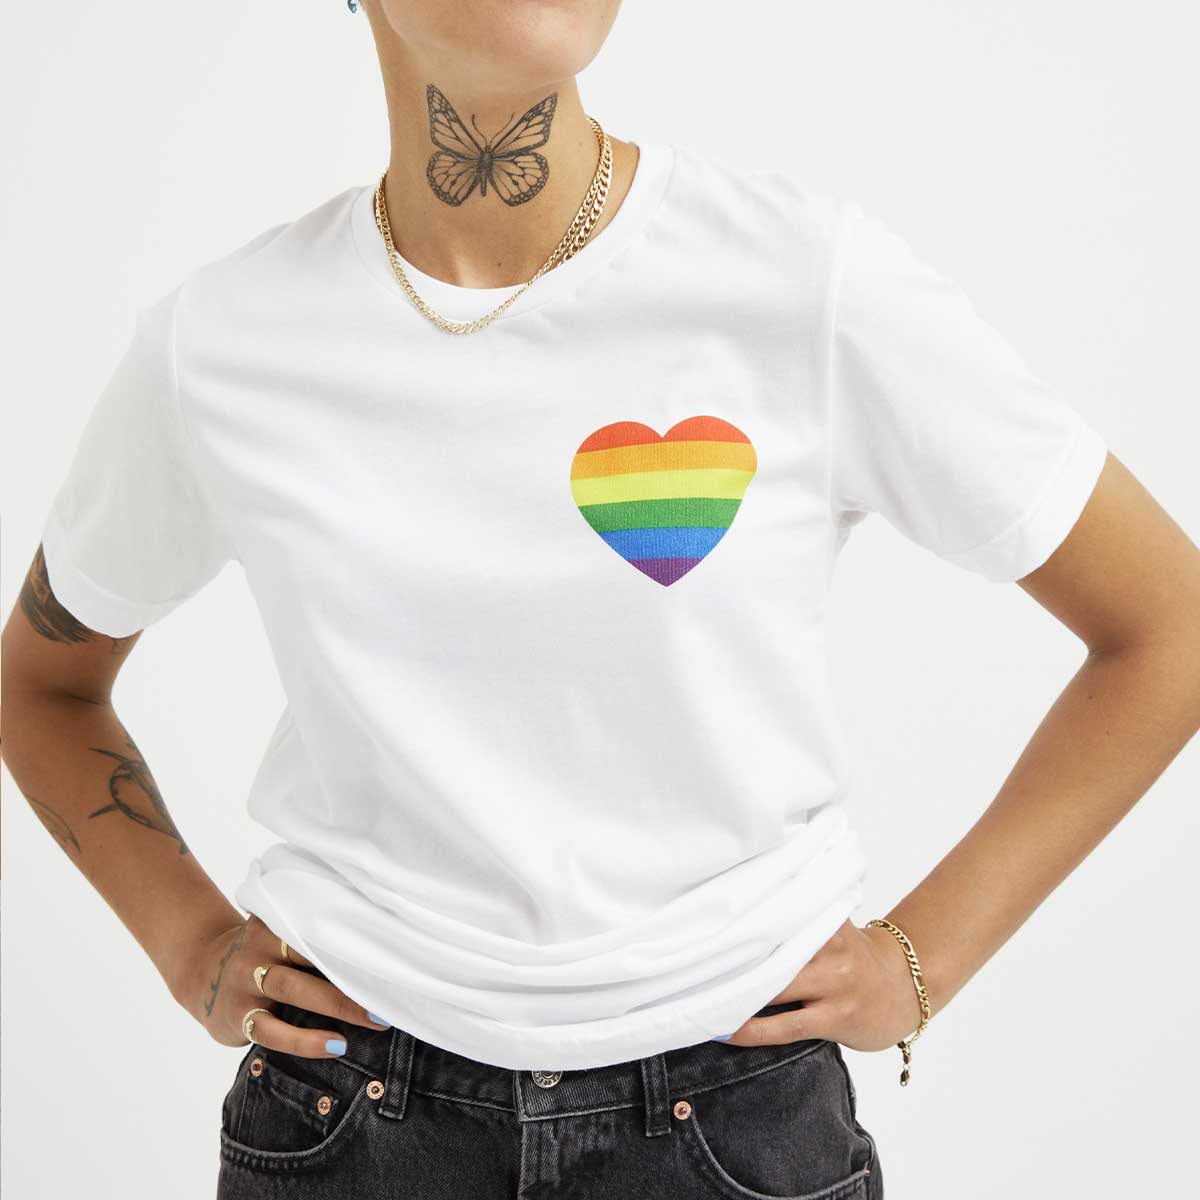 Rainbow Heart T-Shirt – The Spark Company